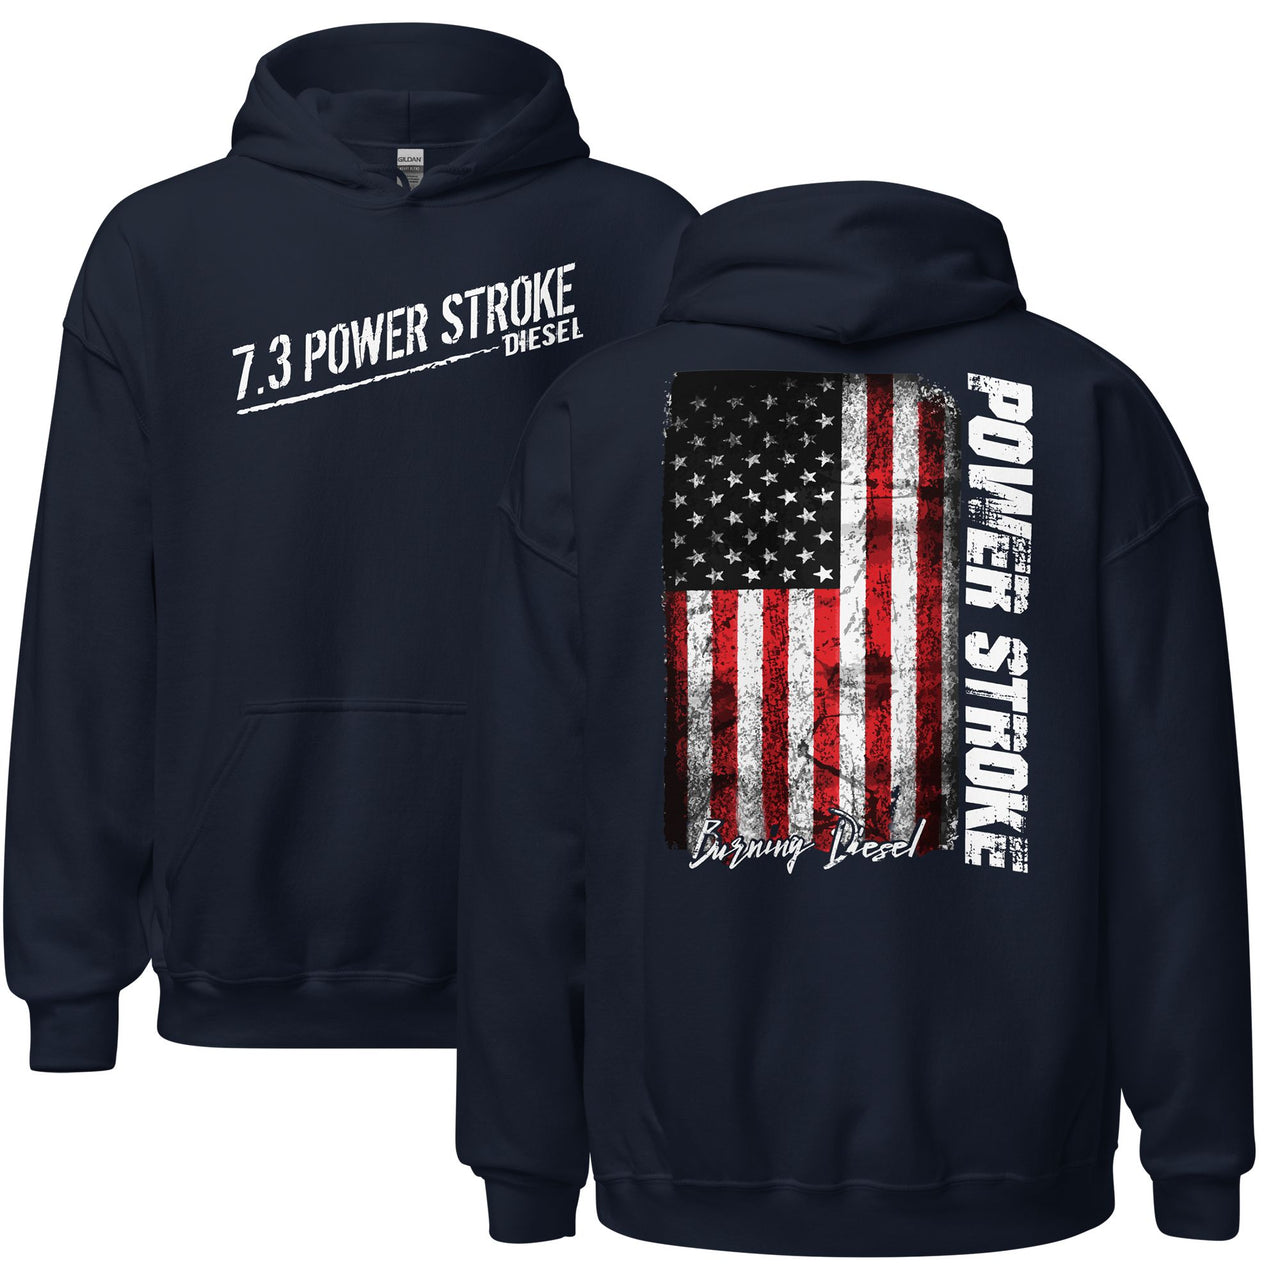 7.3 Power Stroke Diesel Hoodie, American Flag Sweatshirt in navy